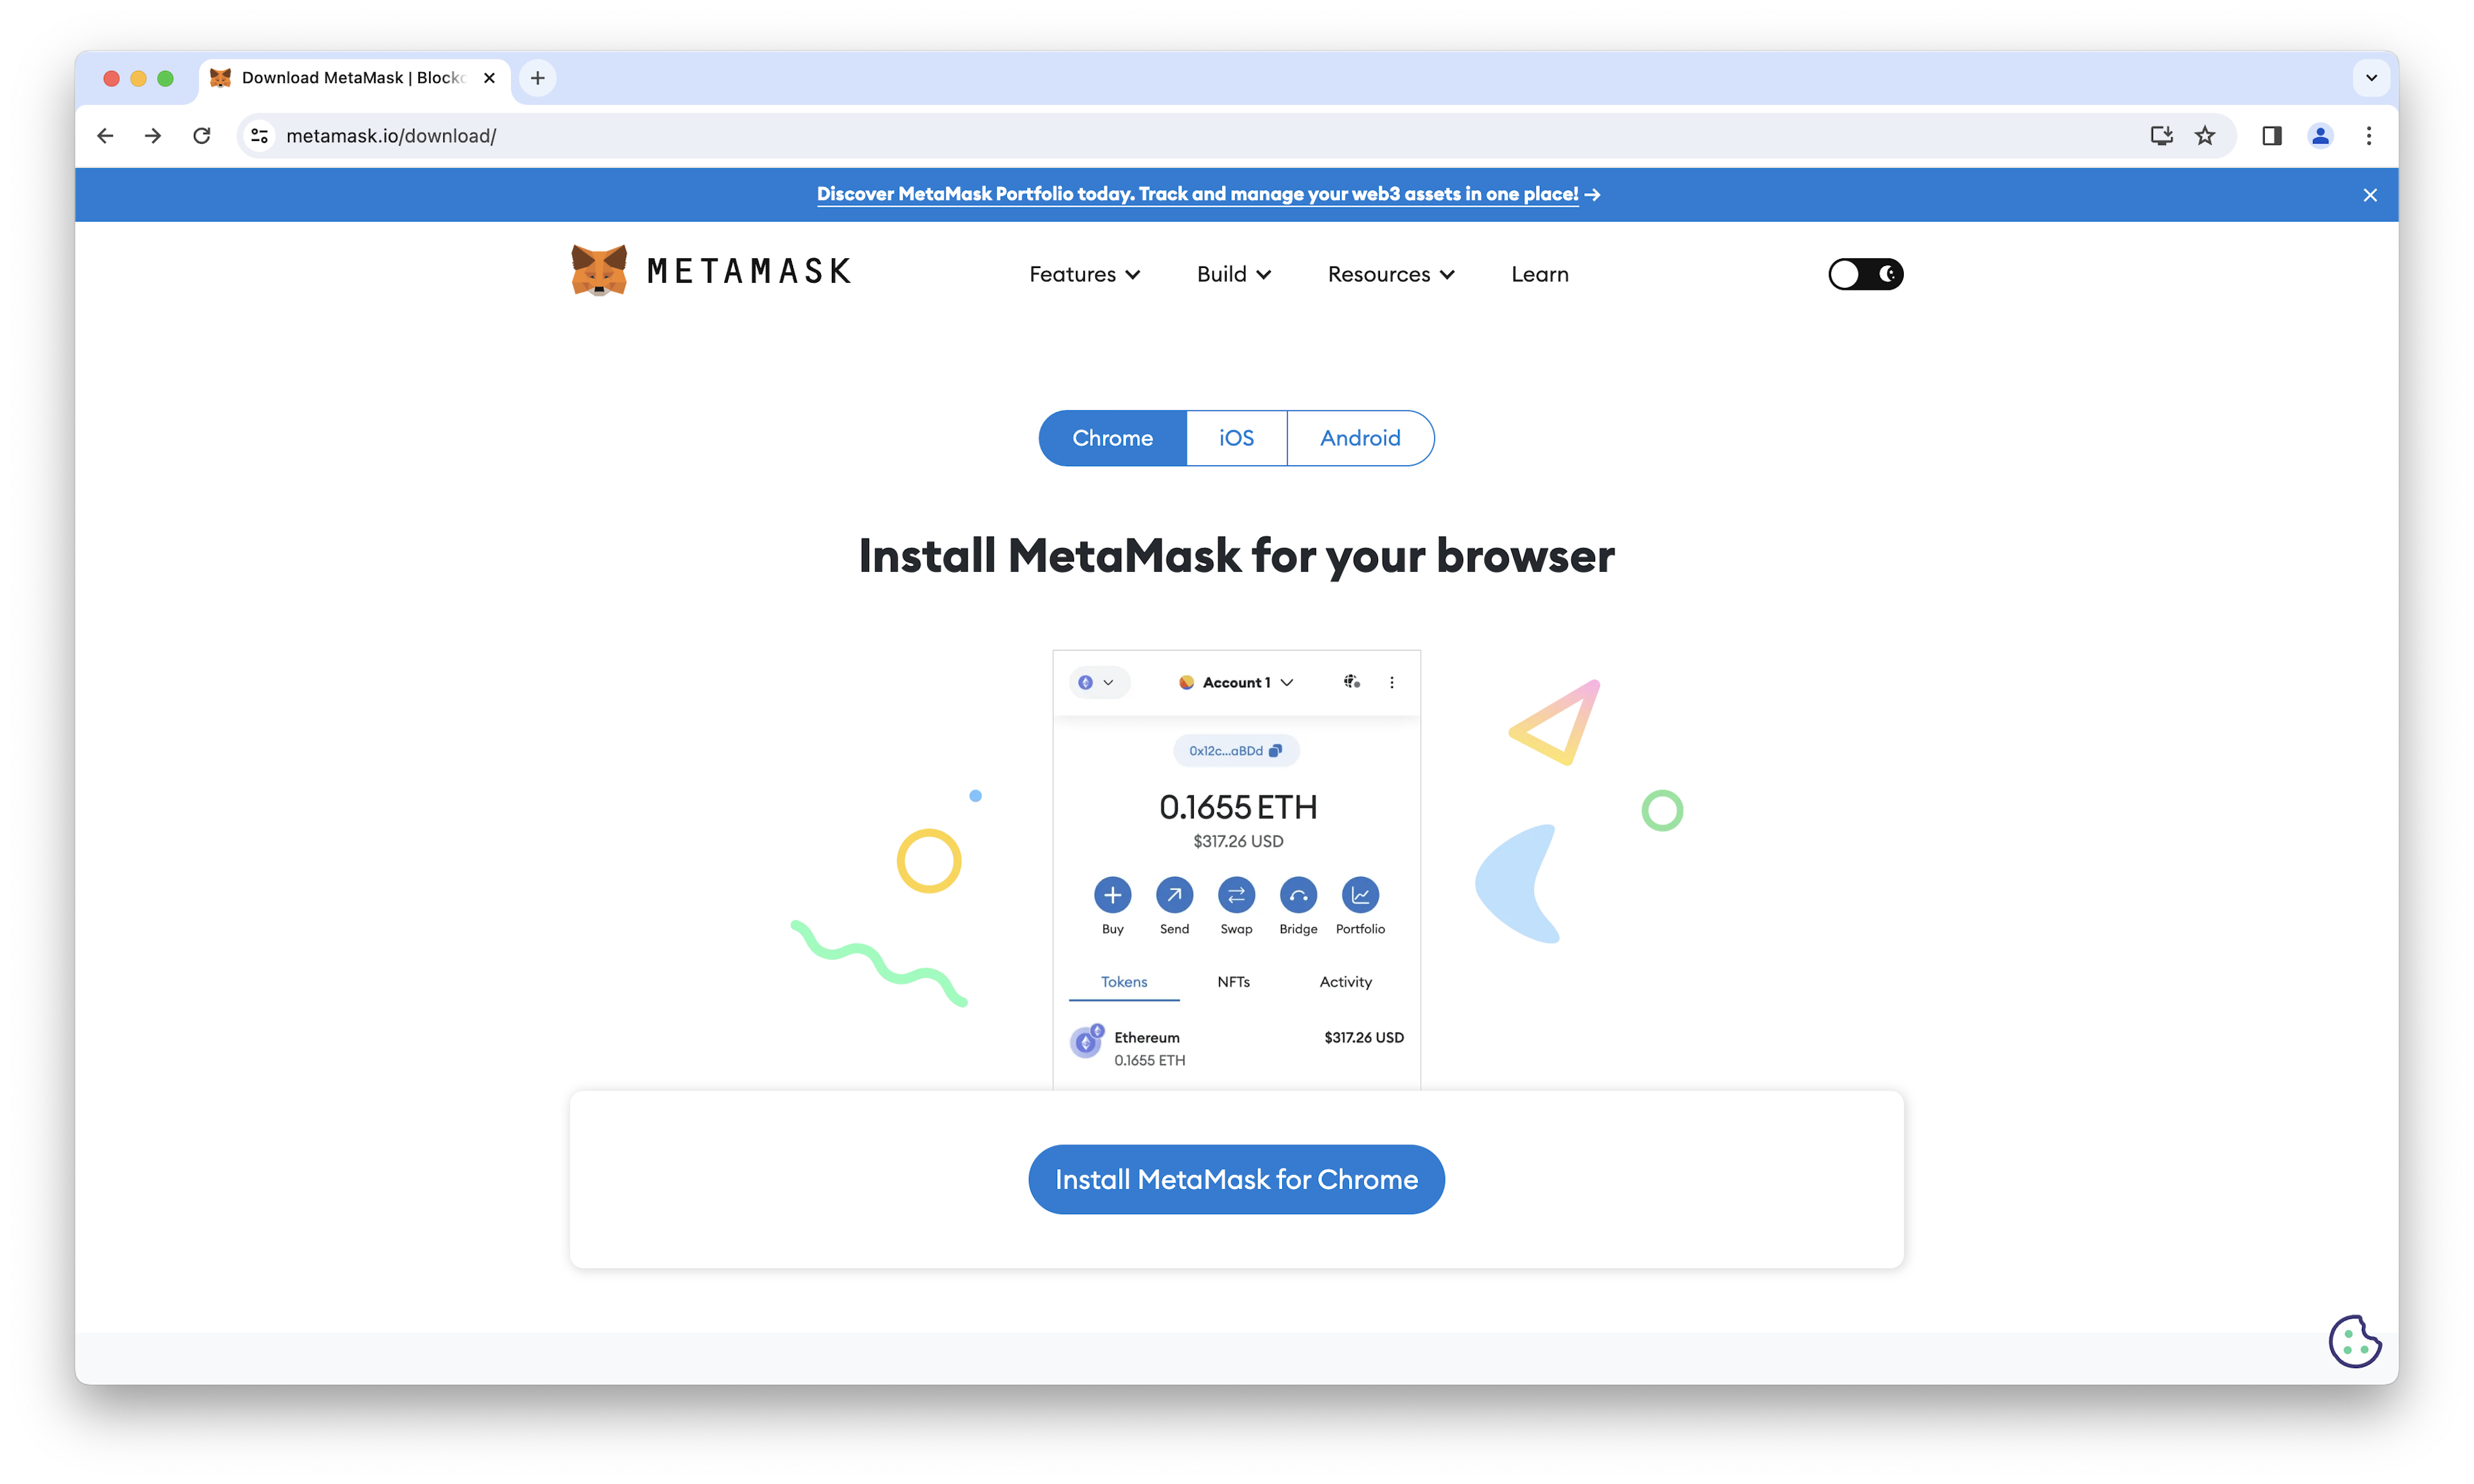 MetaMask download page.